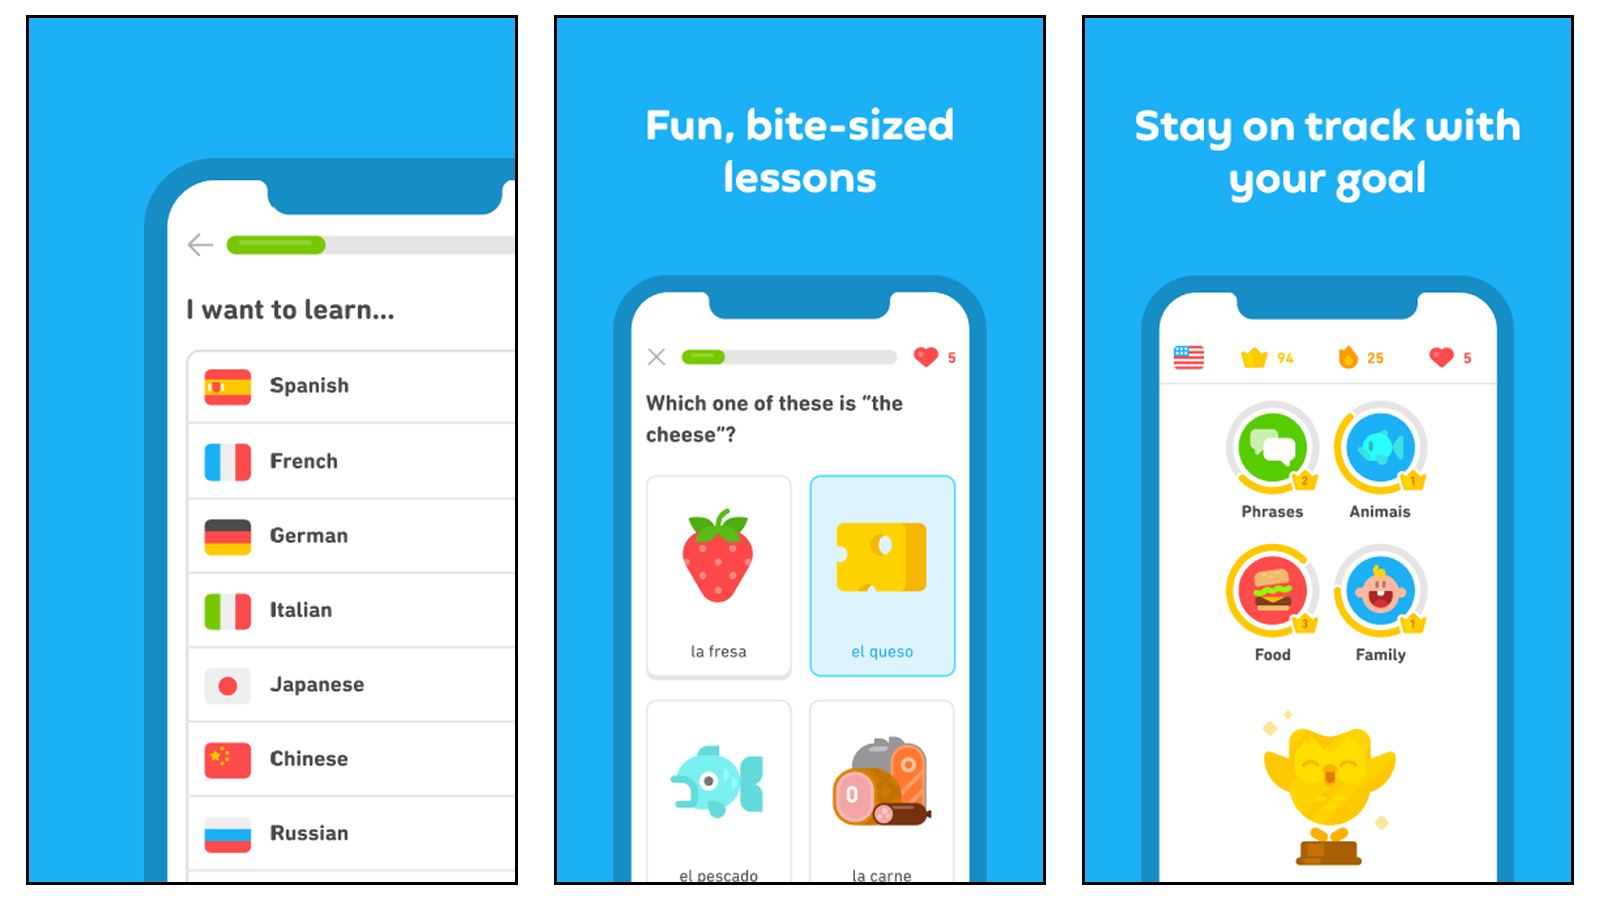 Sử dụng Duolingo để giúp bạn học các khóa học ngôn ngữ của mình, với các bài học ngắn và trợ giúp từ vựng